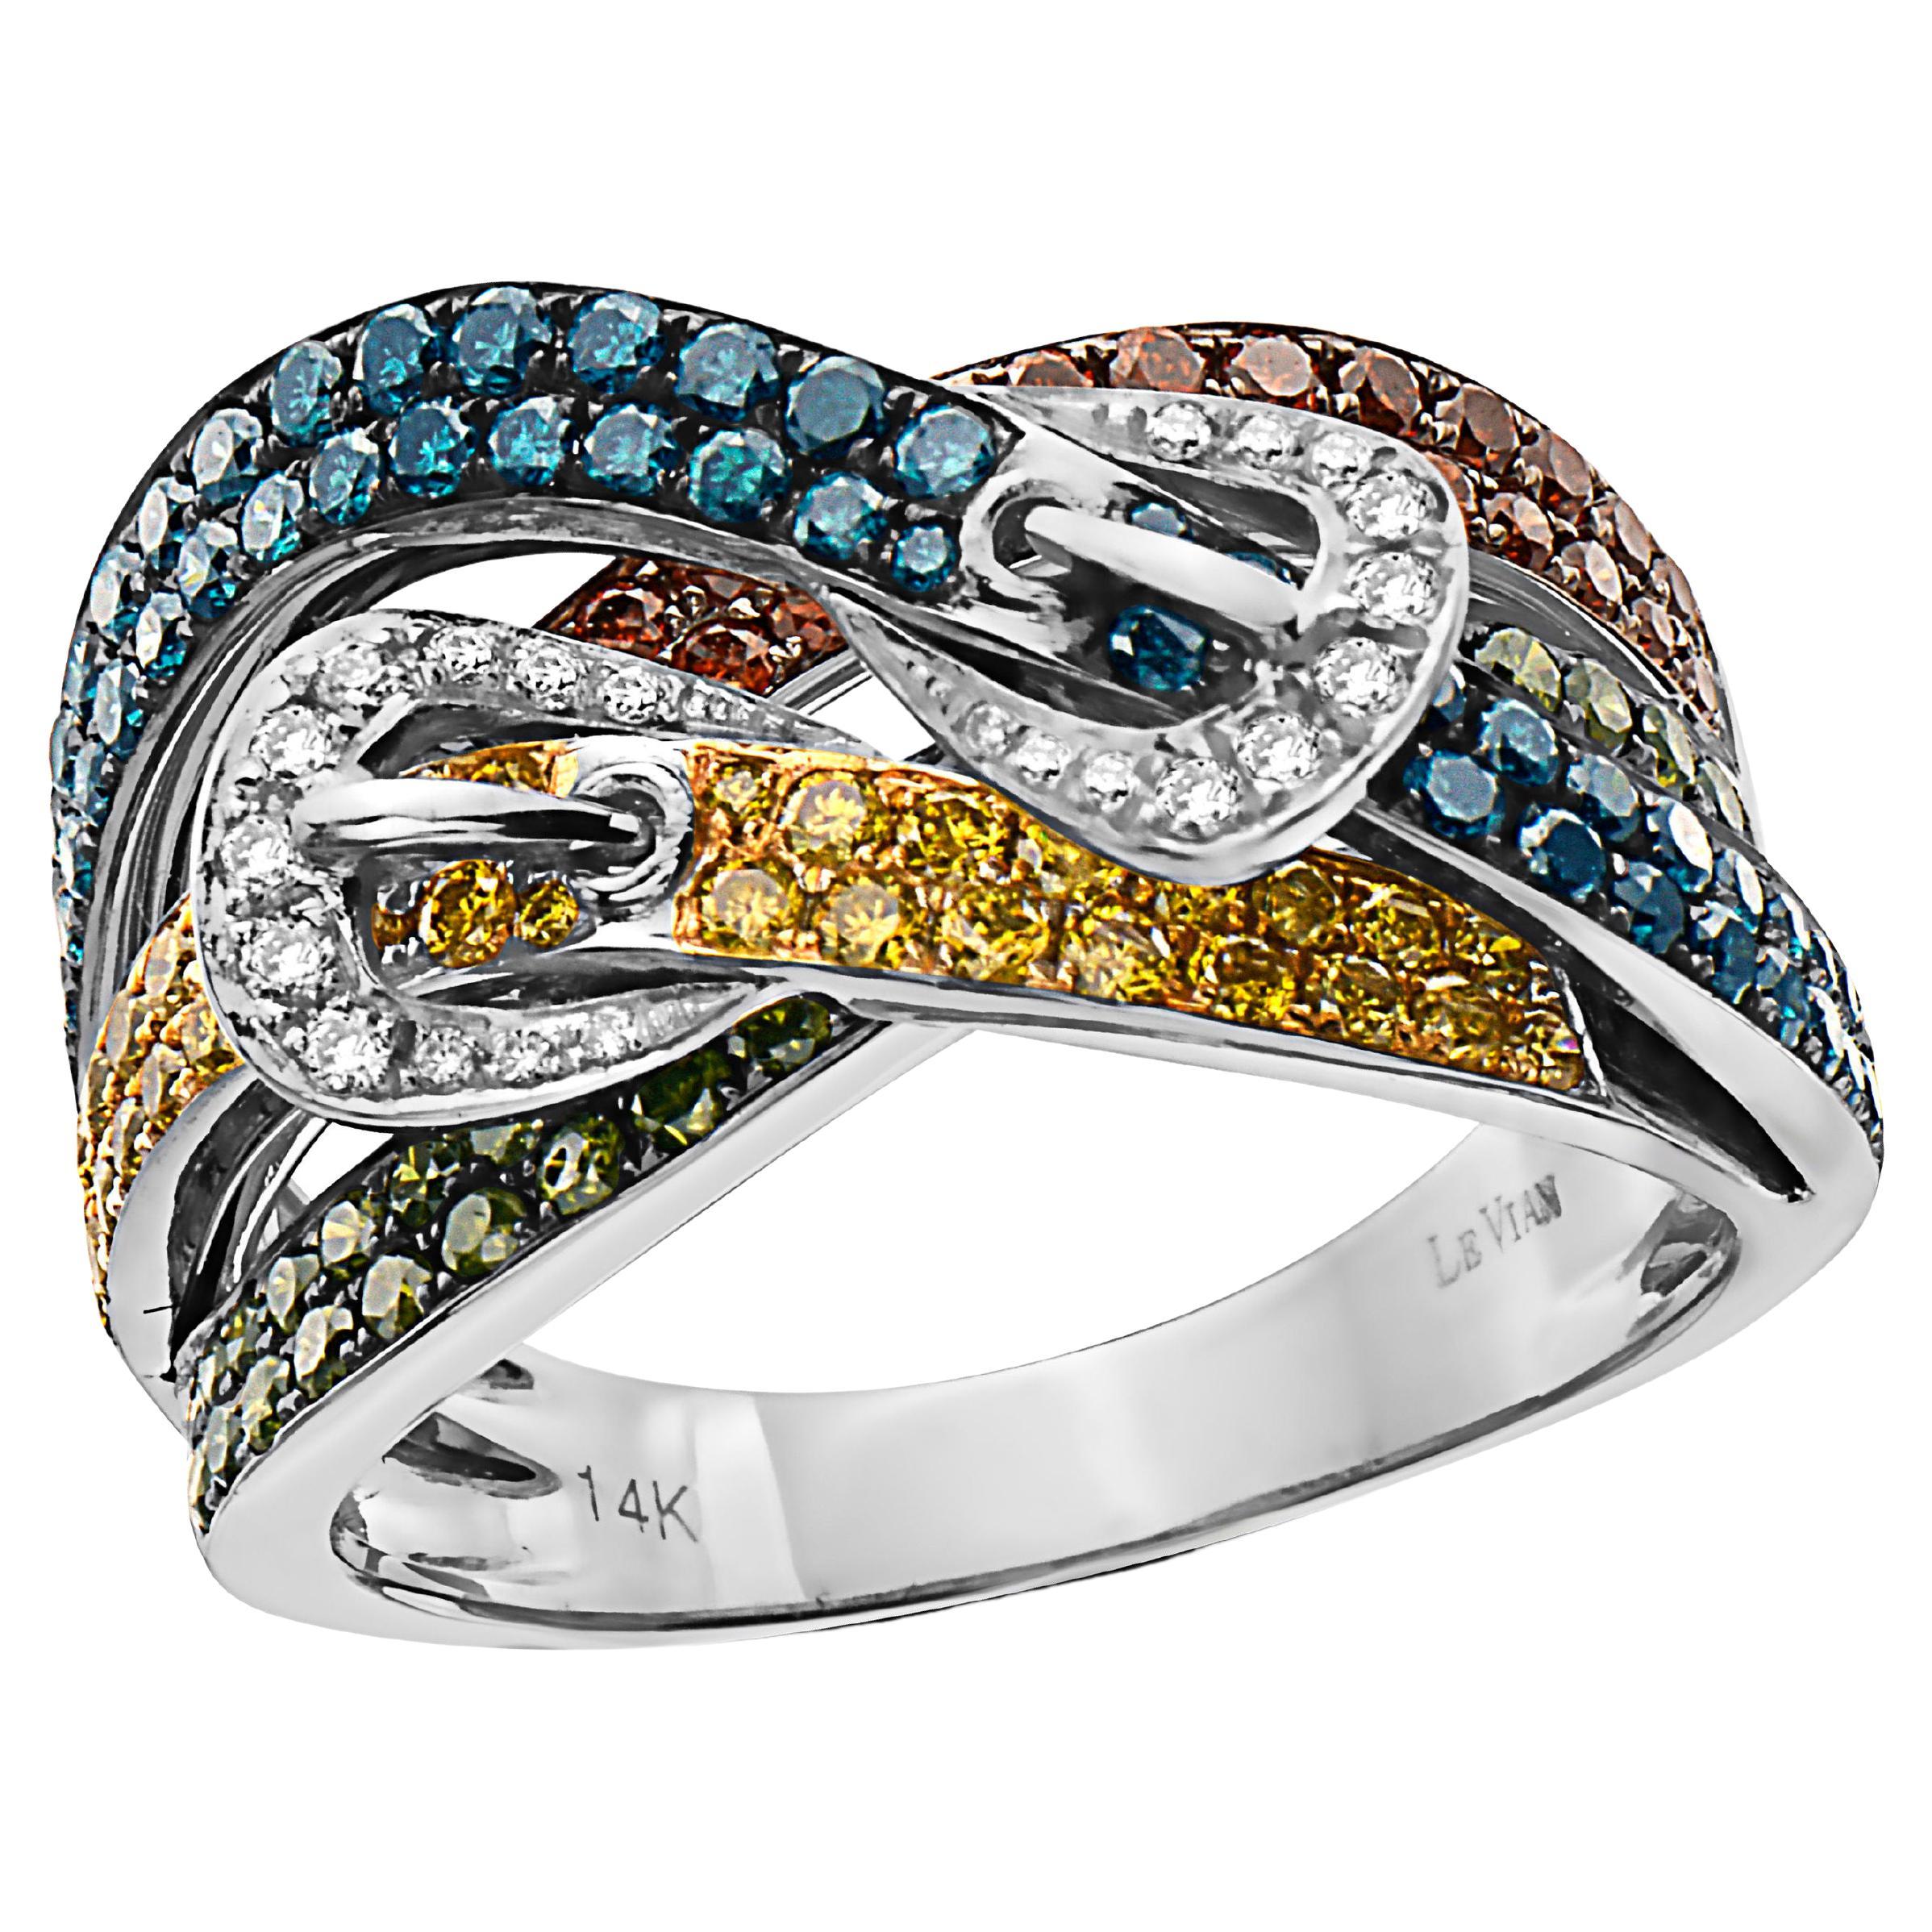 Großer Grand Sample Sale-Ring mit 1 1/2 Karat roten, grünen und weißen Diamanten, gefasst in 14K Weißgold